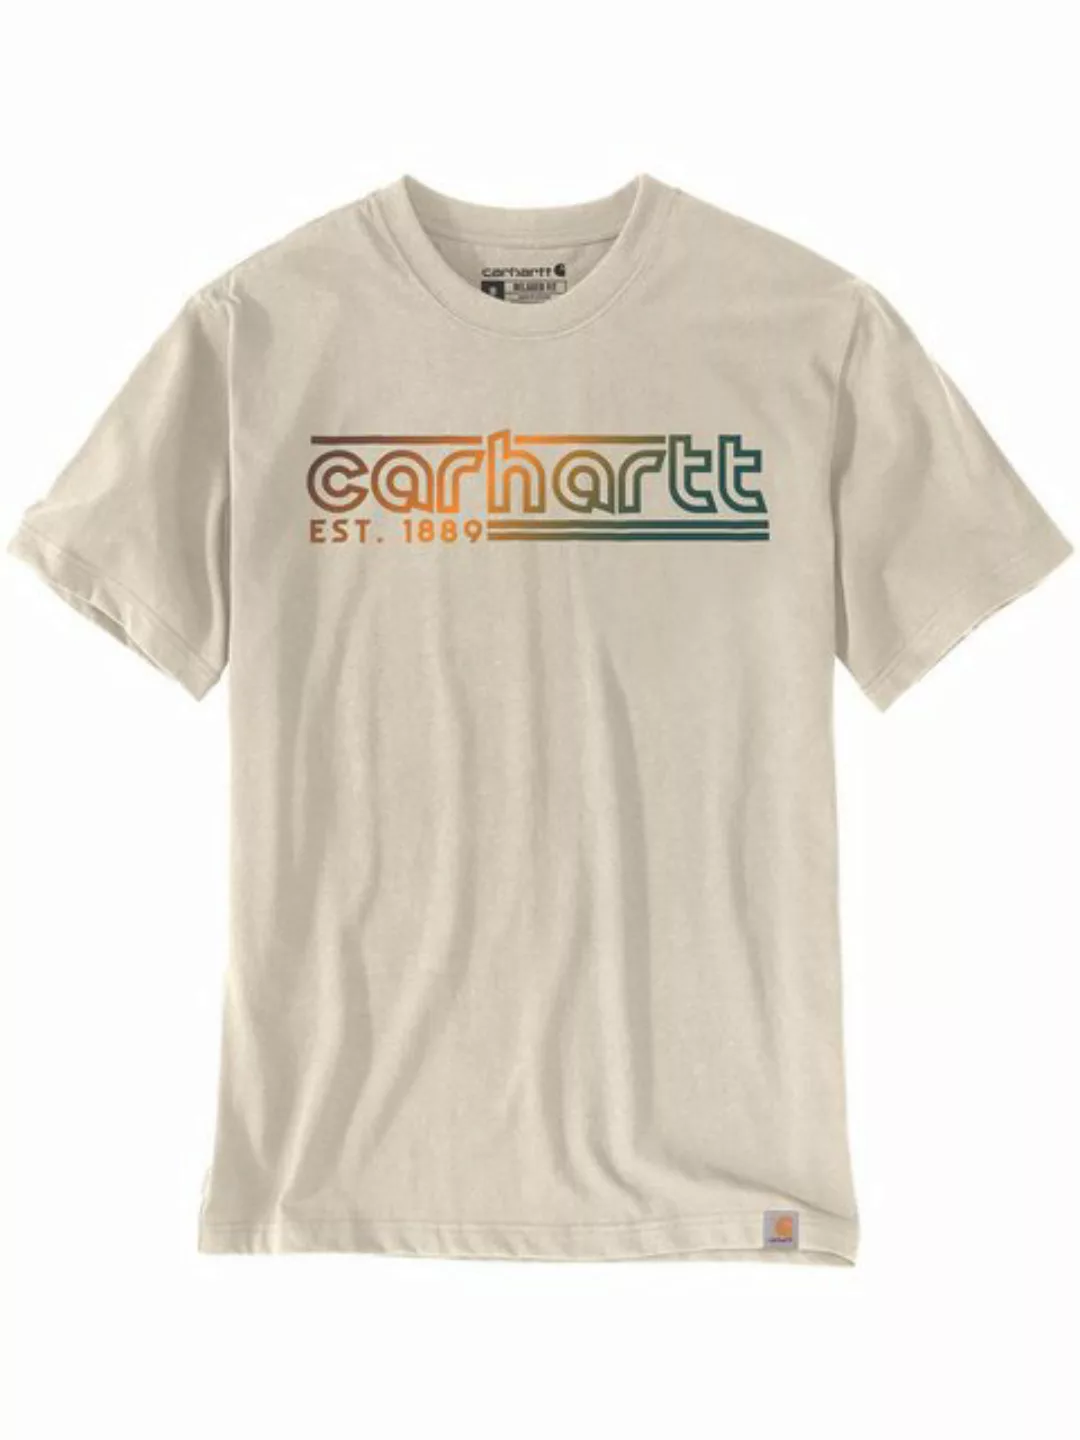 Carhartt T-Shirt 106538-A16 Carhartt Graphic günstig online kaufen